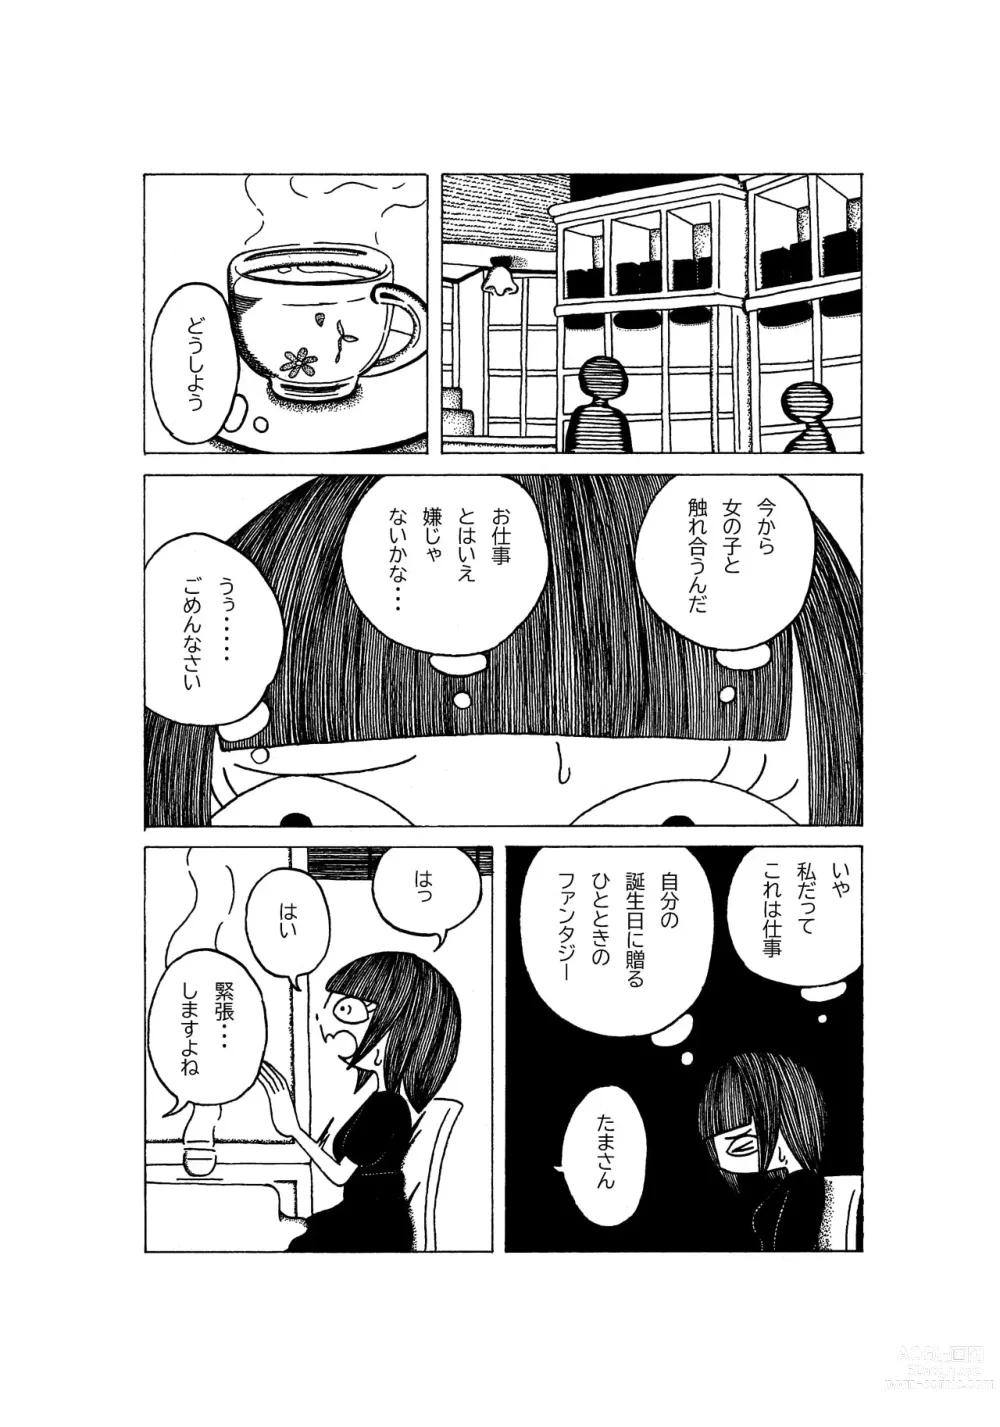 Page 3 of doujinshi Tokubetsuna Tanjoubi no Dekigoto.